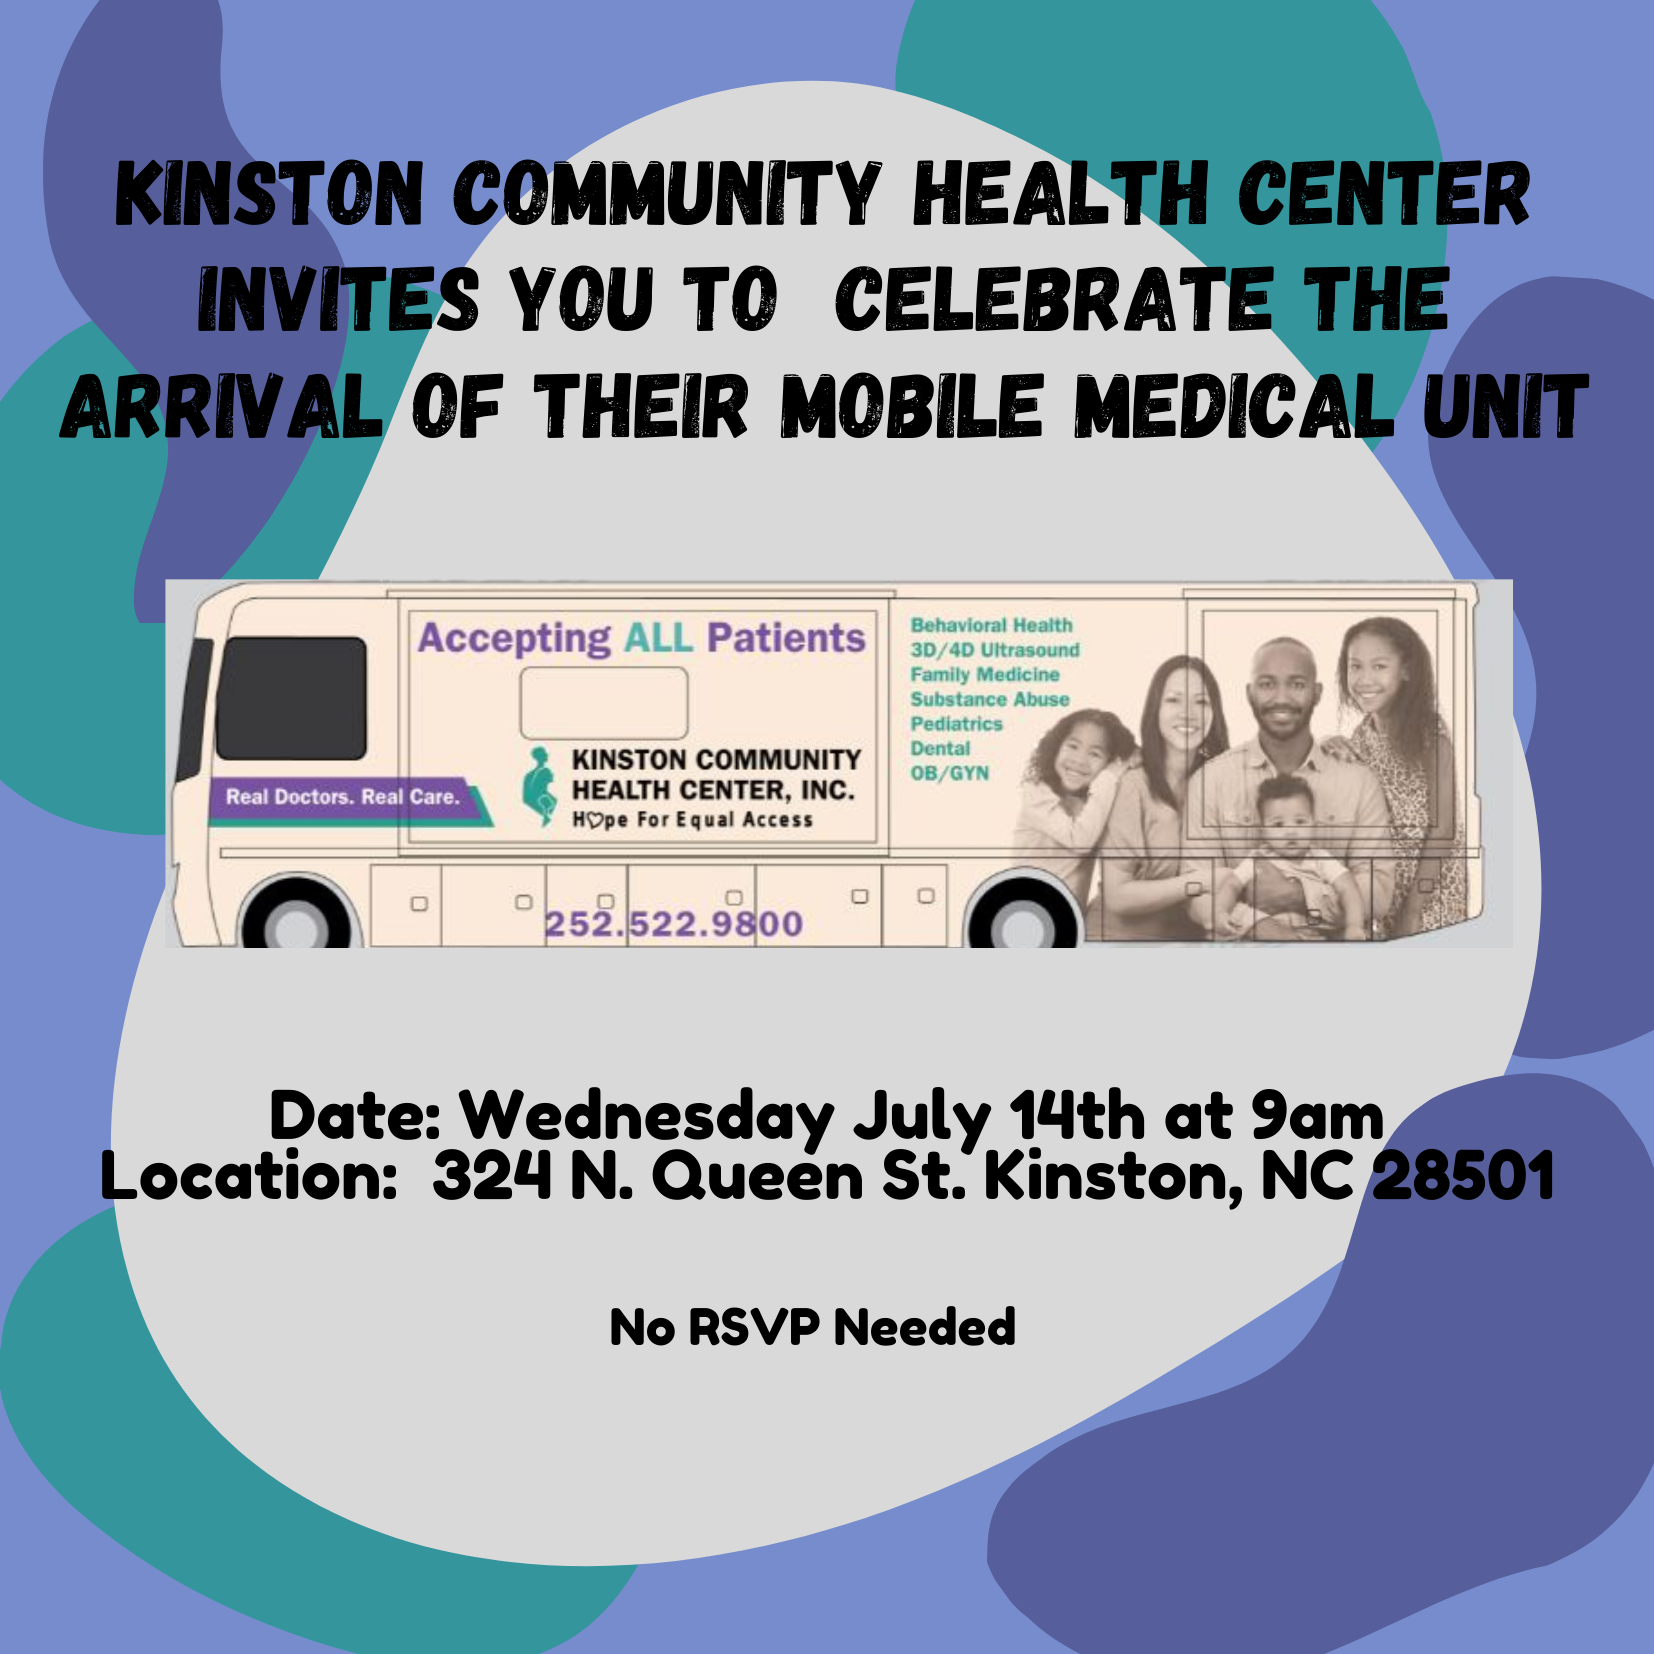 KCHC Receives New Mobile Medical Unit - Kinston Community Health Center